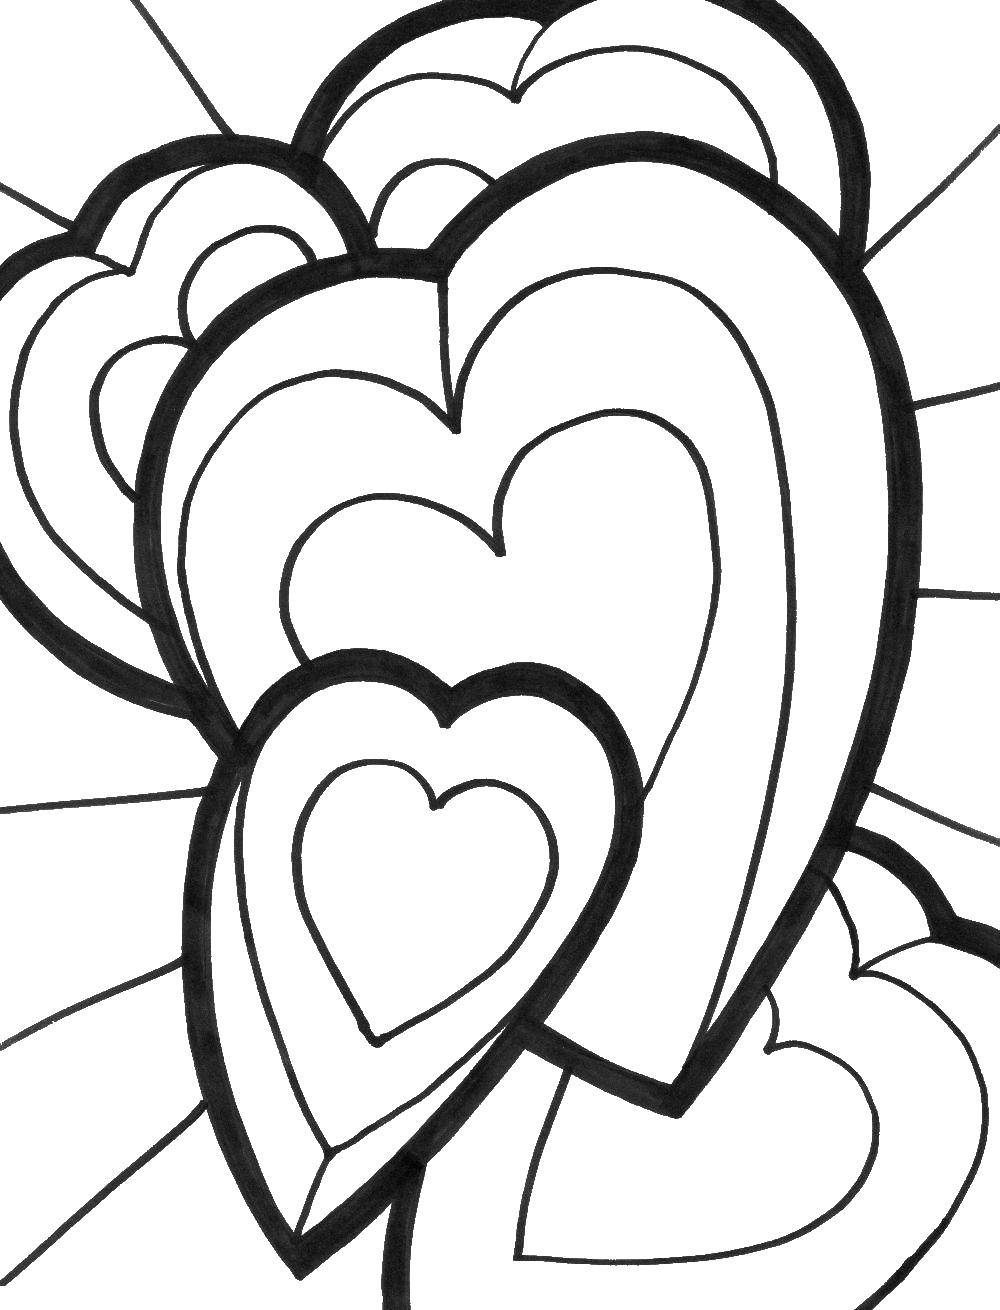 Coloring Many hearts. Category Hearts. Tags:  Heart, love.